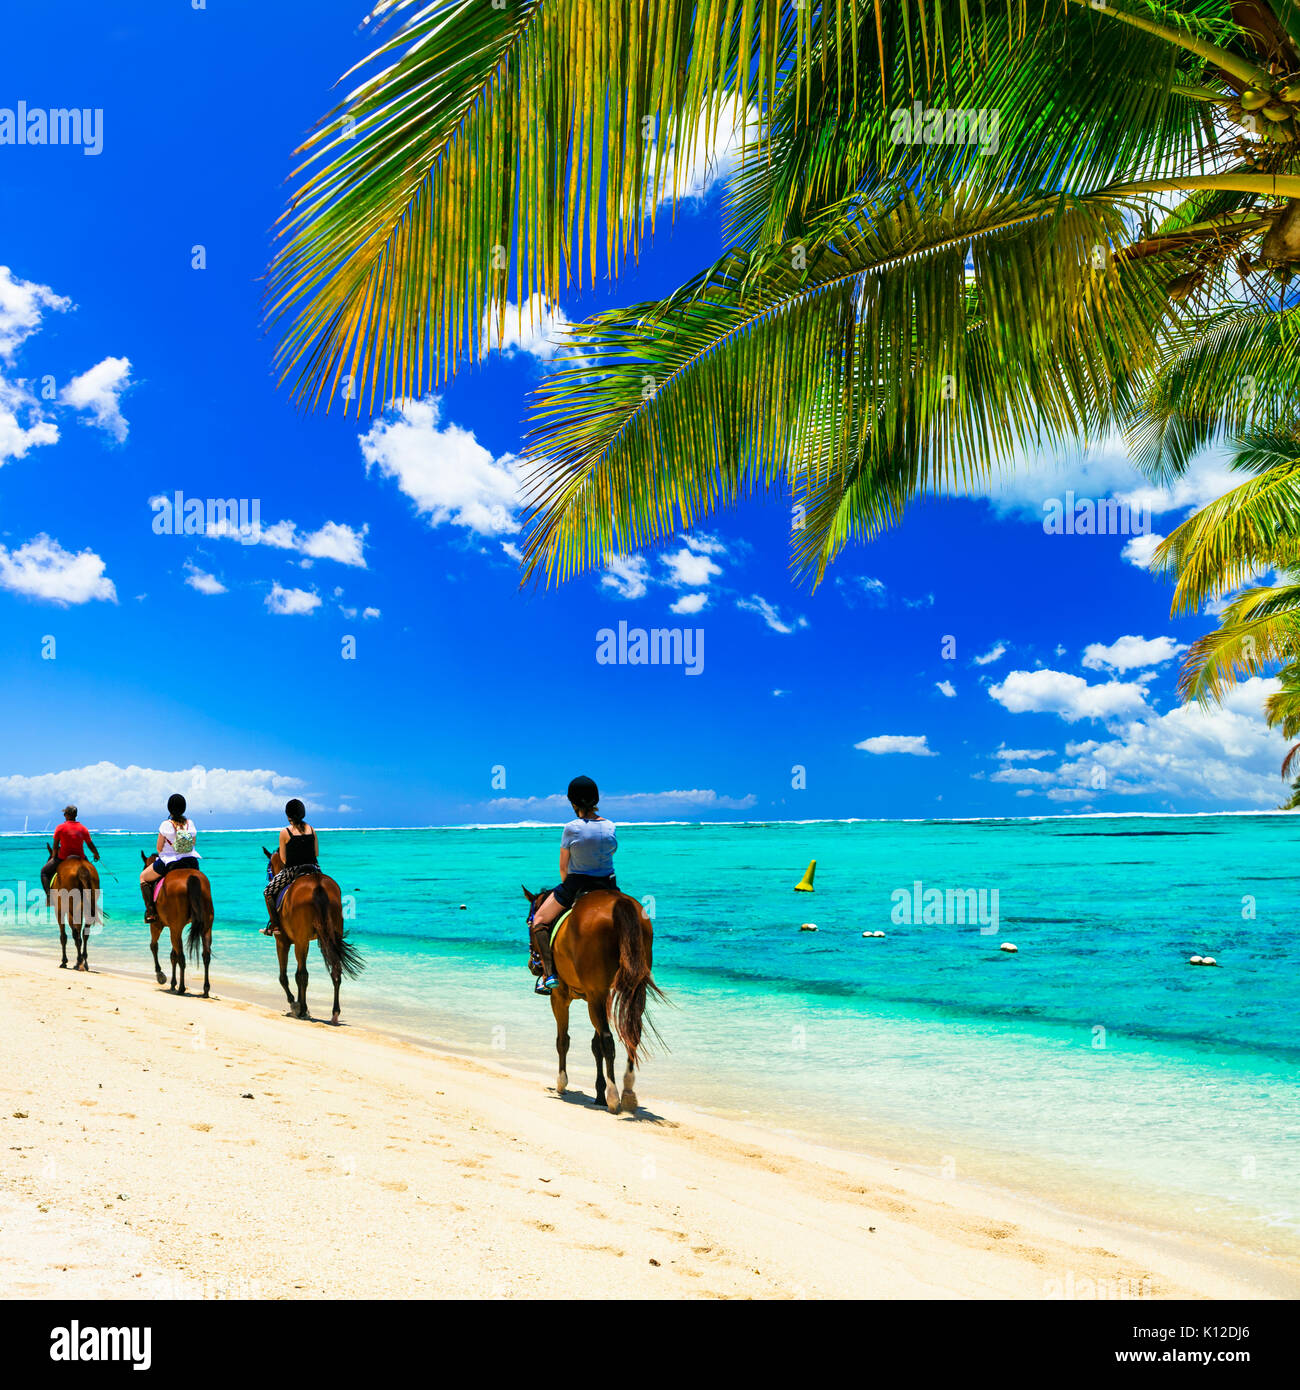 Arena blanca,caballos y palmera,la Isla Mauricio. Foto de stock